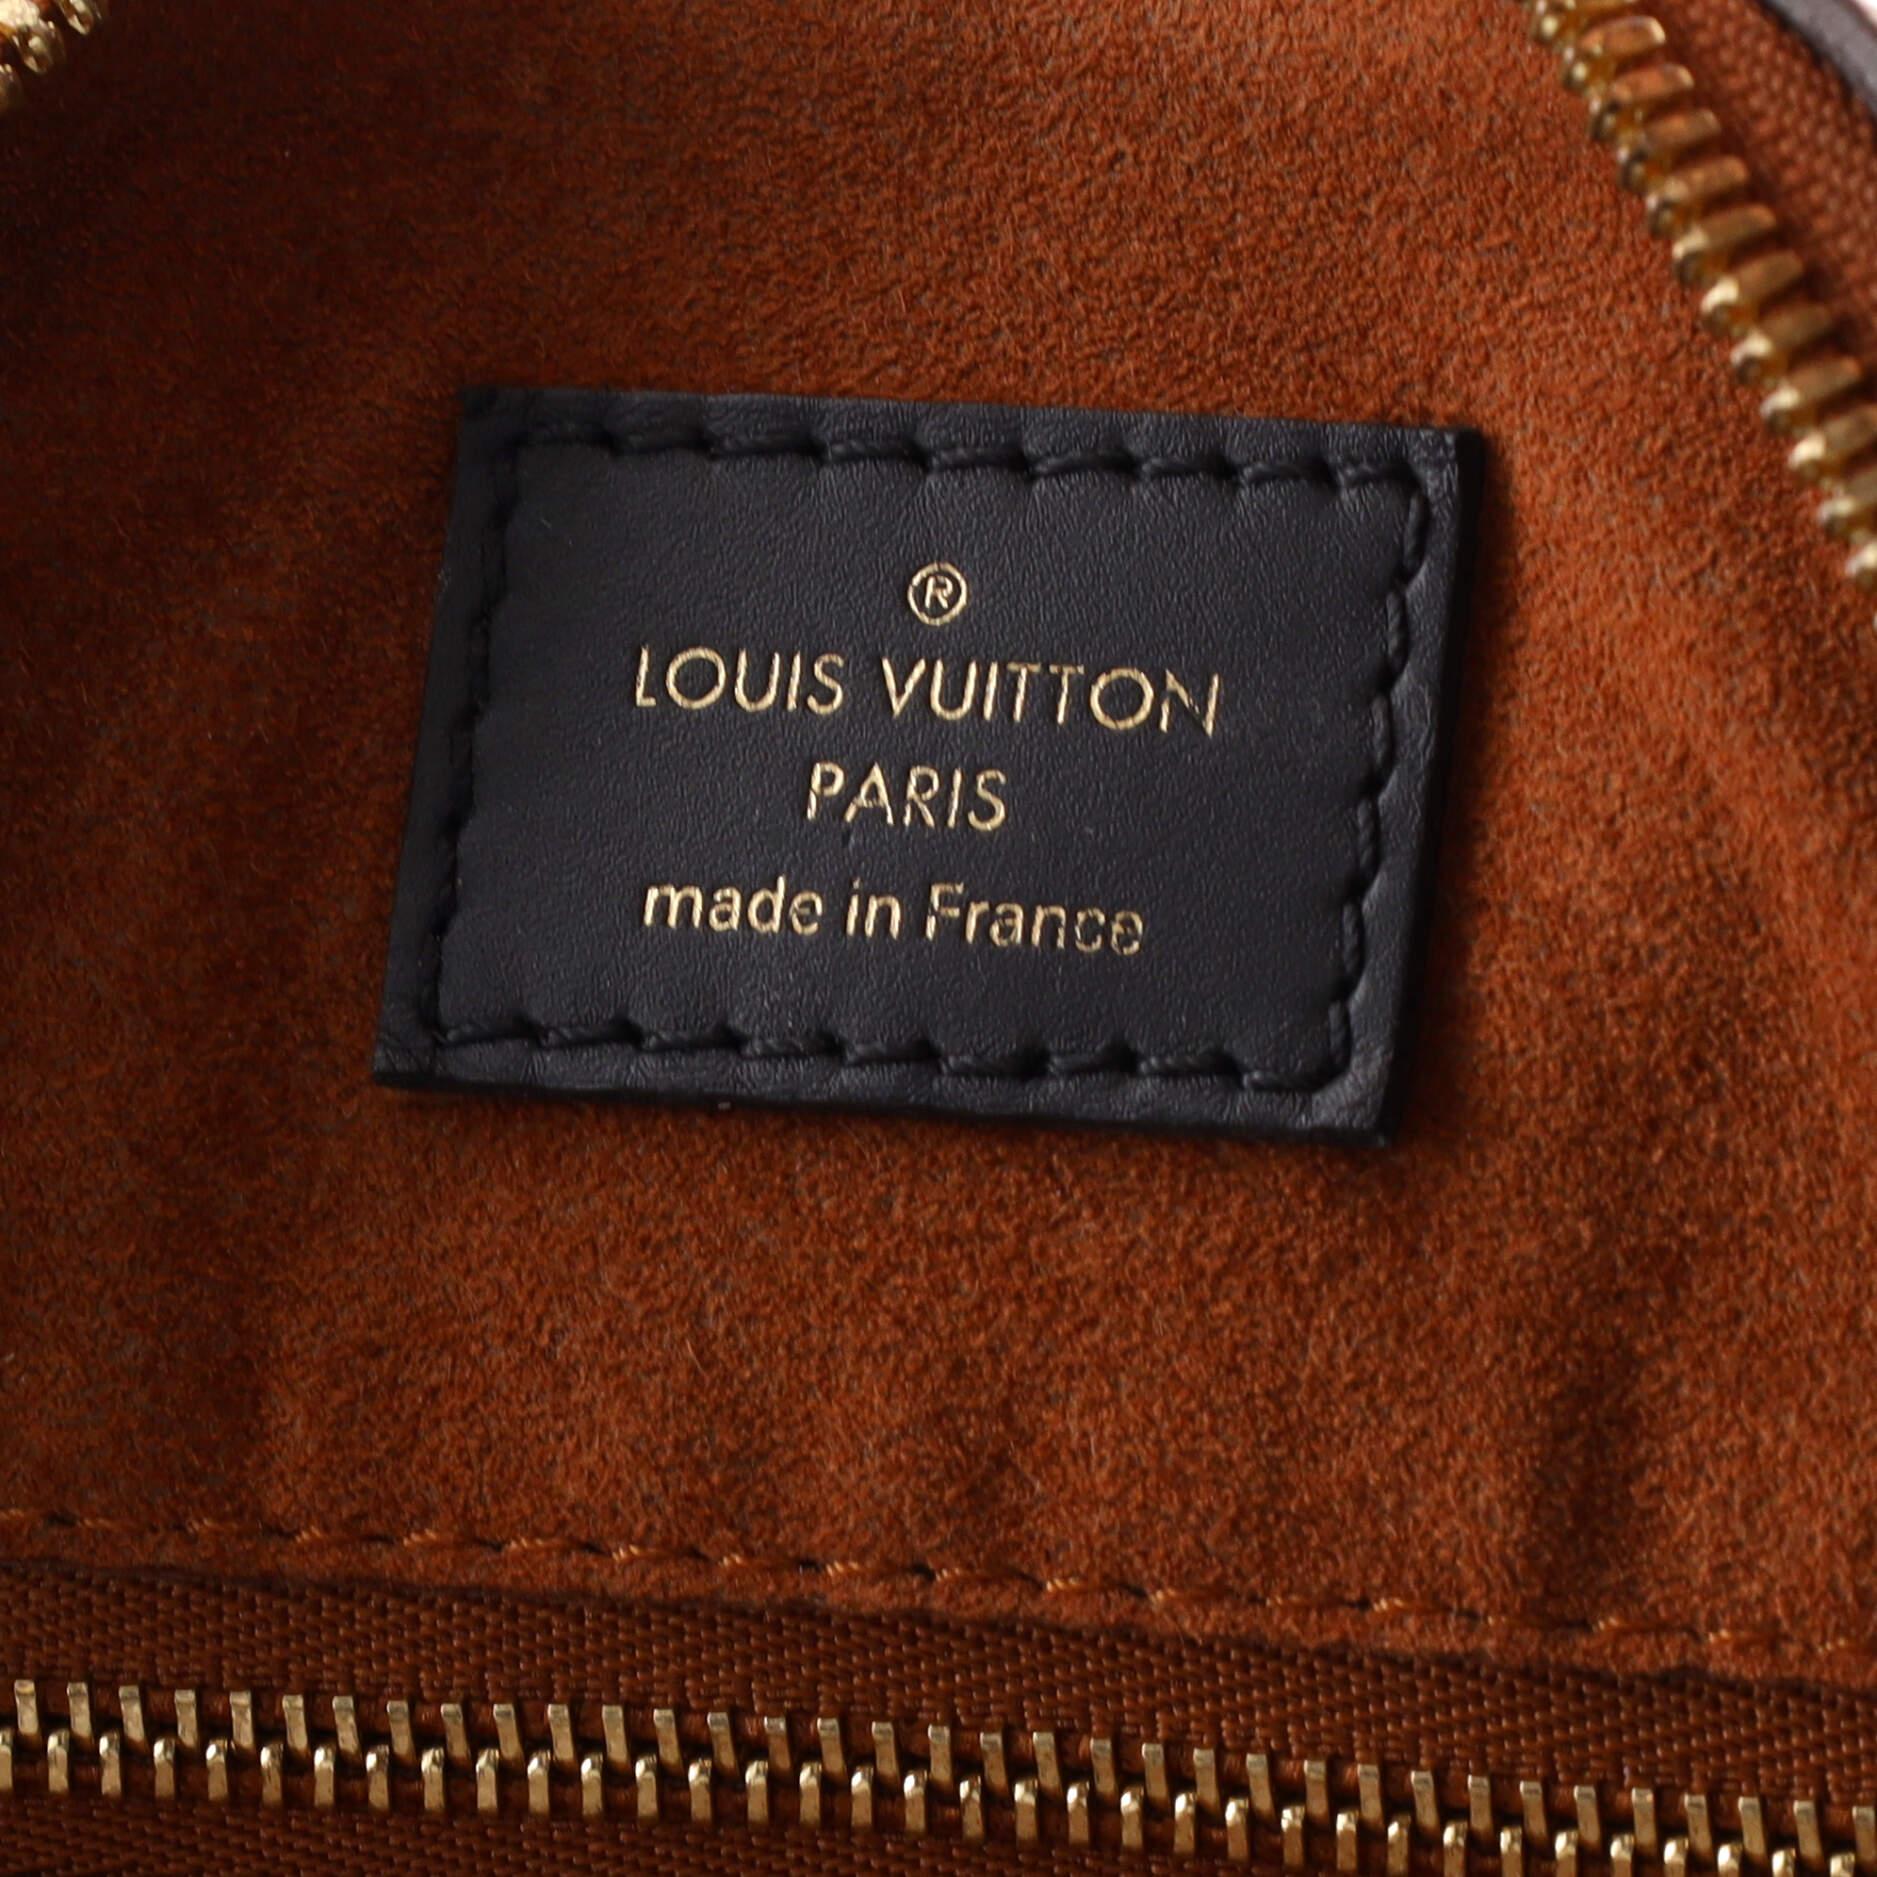 Louis Vuitton - Sac Speedy Bandoulière Wild at Heart - Monogramme Empreinte Gia 4